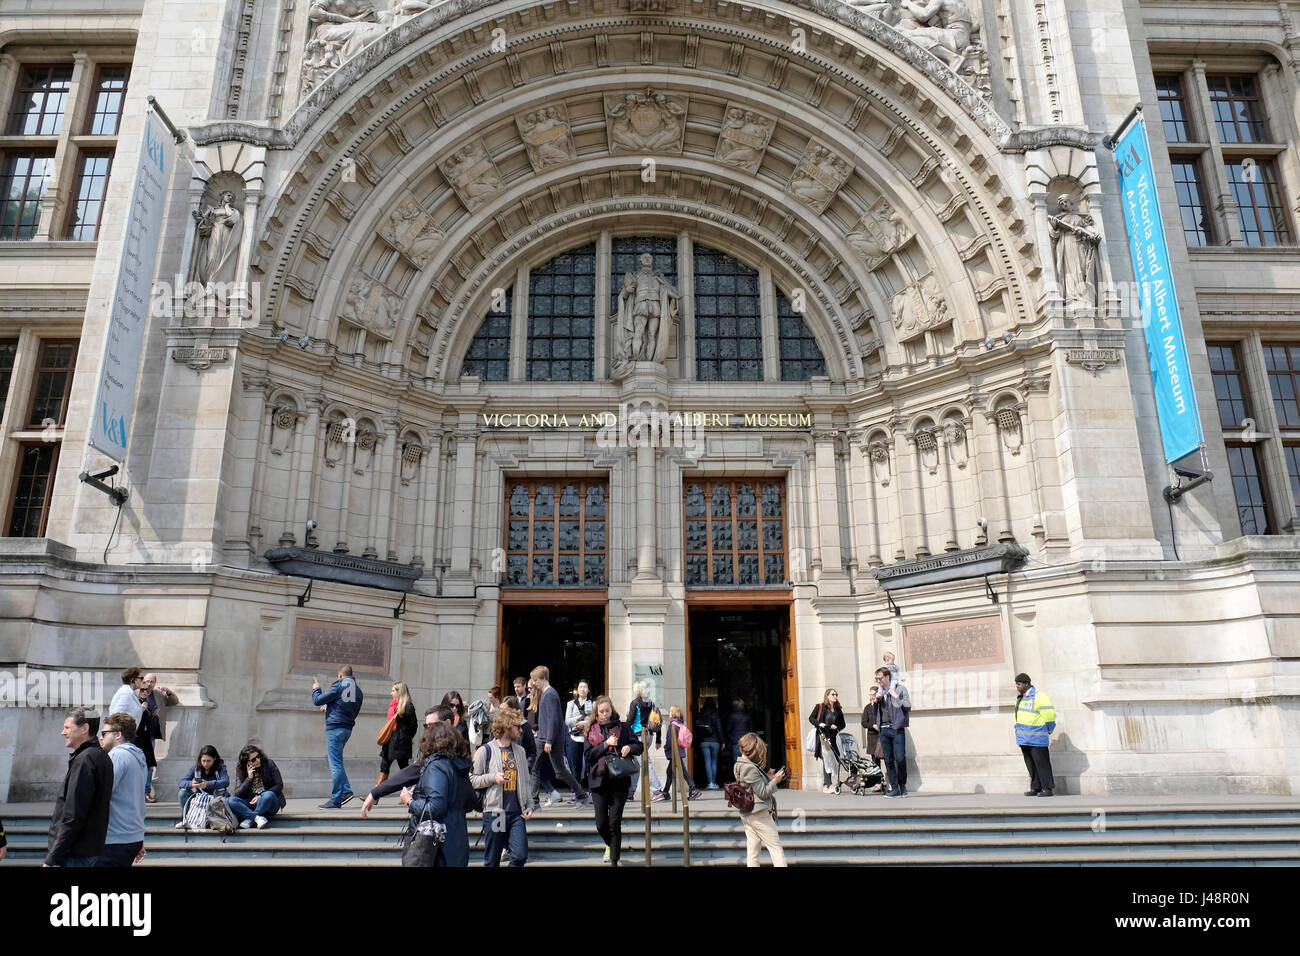 Una vista general de la entrada principal del Victoria and Albert Museum en South Kensington, Londres, Reino Unido. Foto de stock